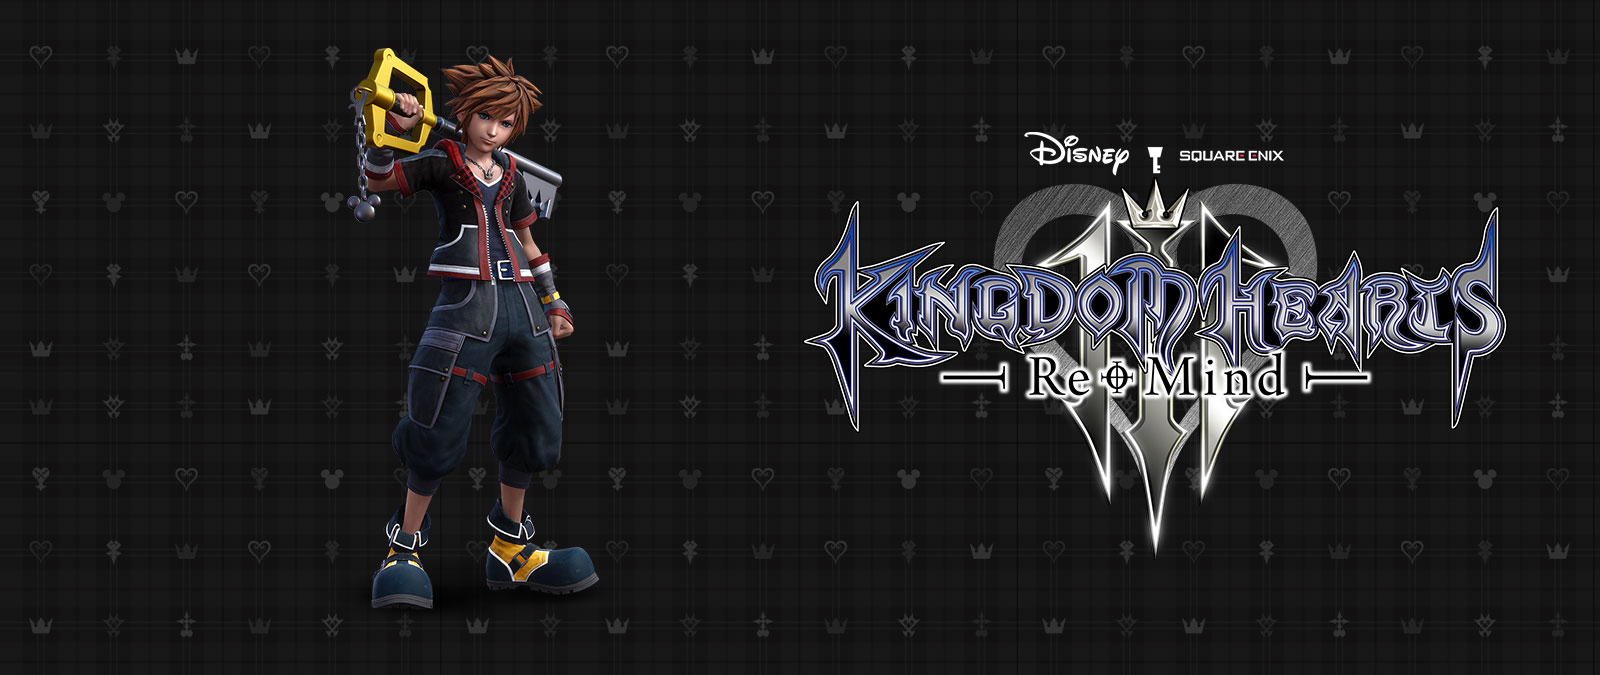 Disney Kingdom Hearts 3, Re-Mind, Sora staat voor een zwart achtergrondpatroon terwijl het Keyblade op zijn schouder rust. 